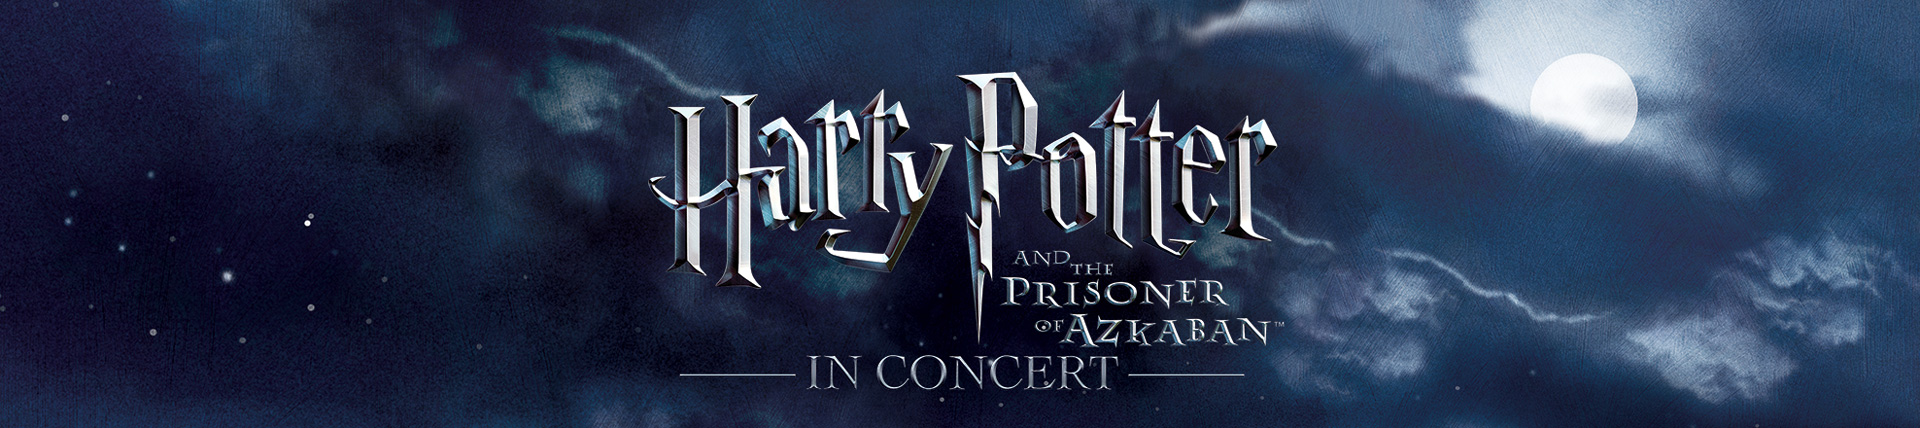 Harry Potter and the Prisoner of Azkaban Banner